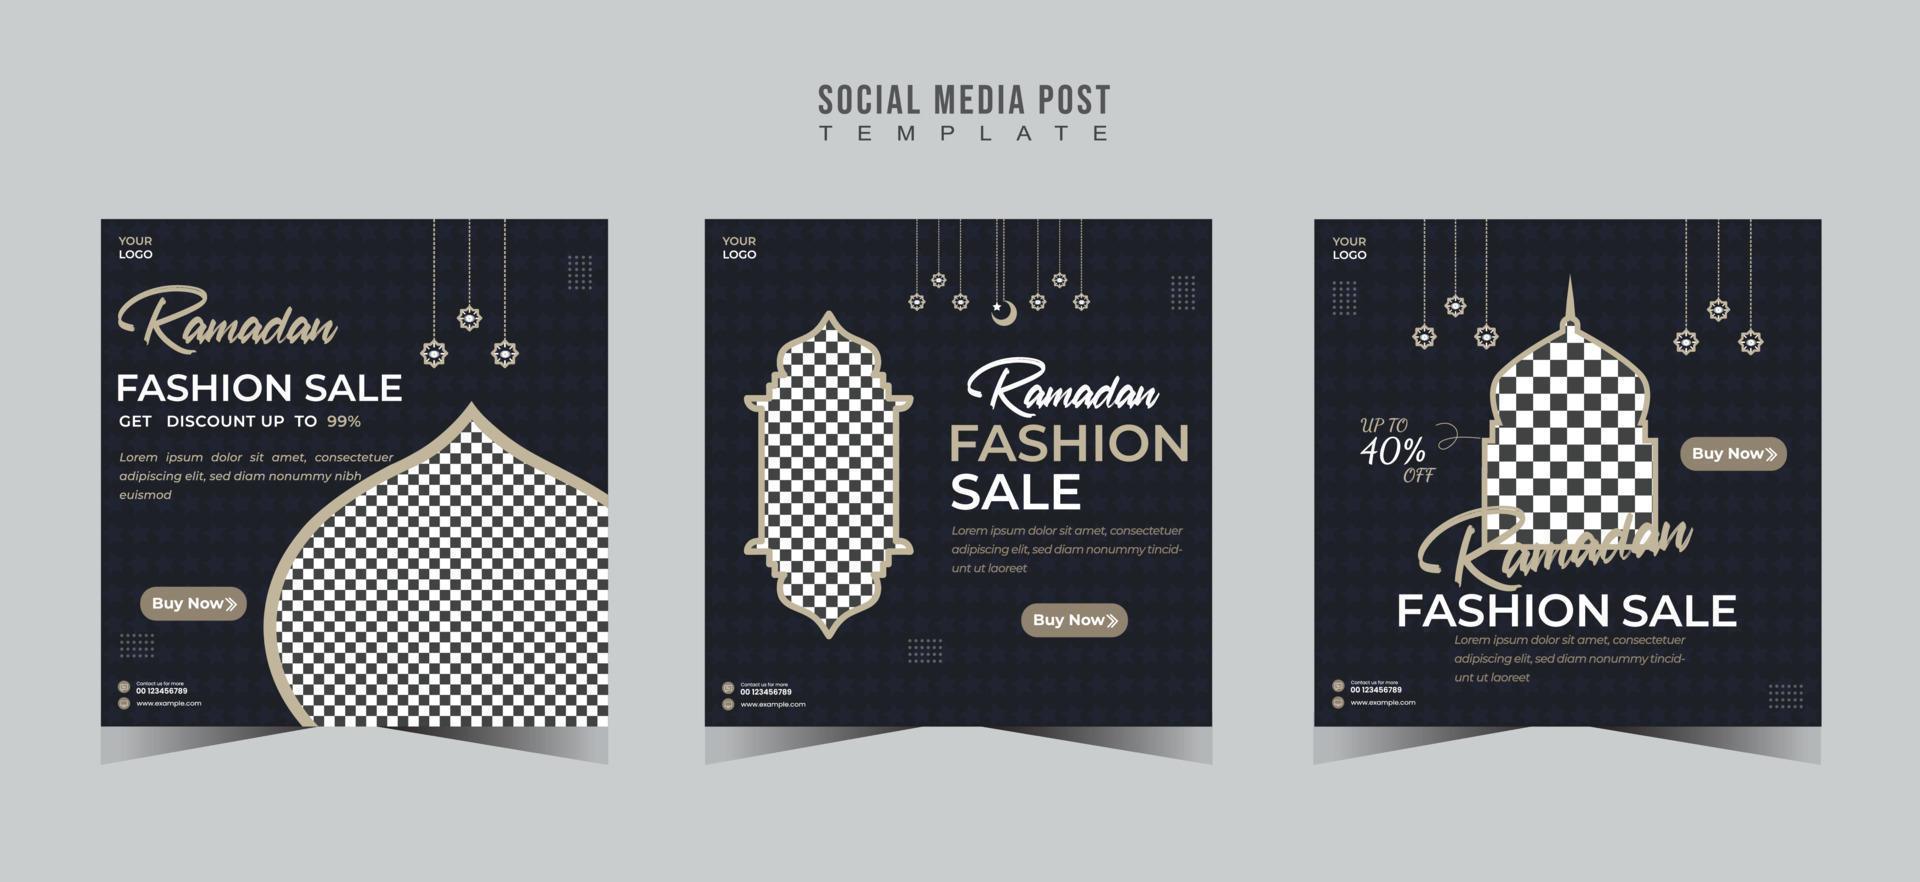 Islamic Ramadan social media post template design vector